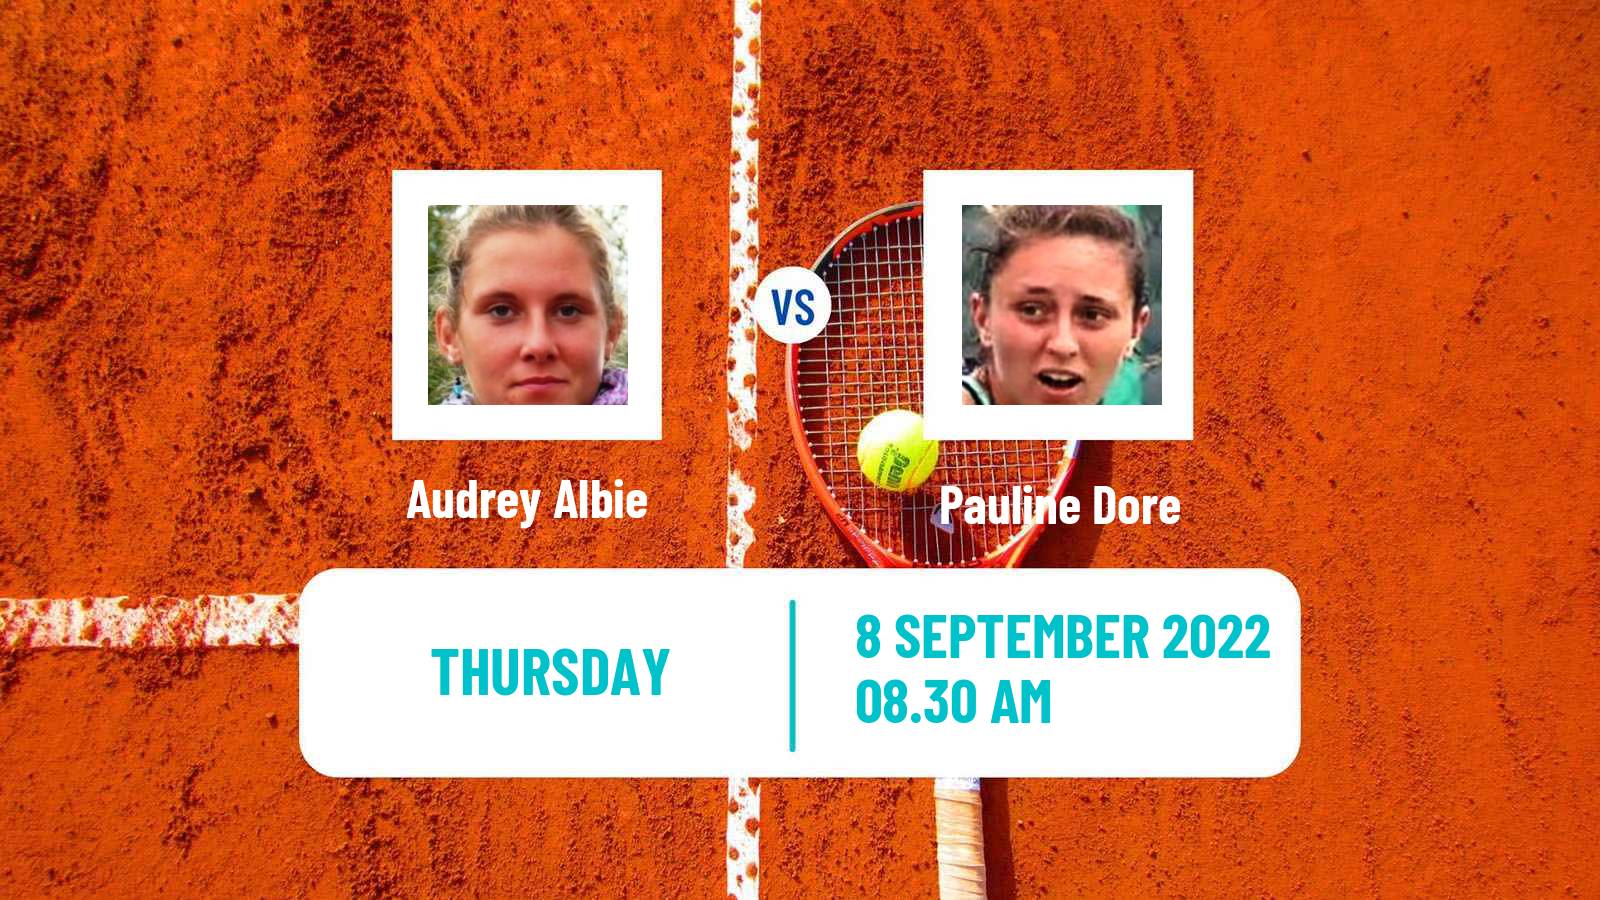 Tennis ITF Tournaments Audrey Albie - Pauline Dore